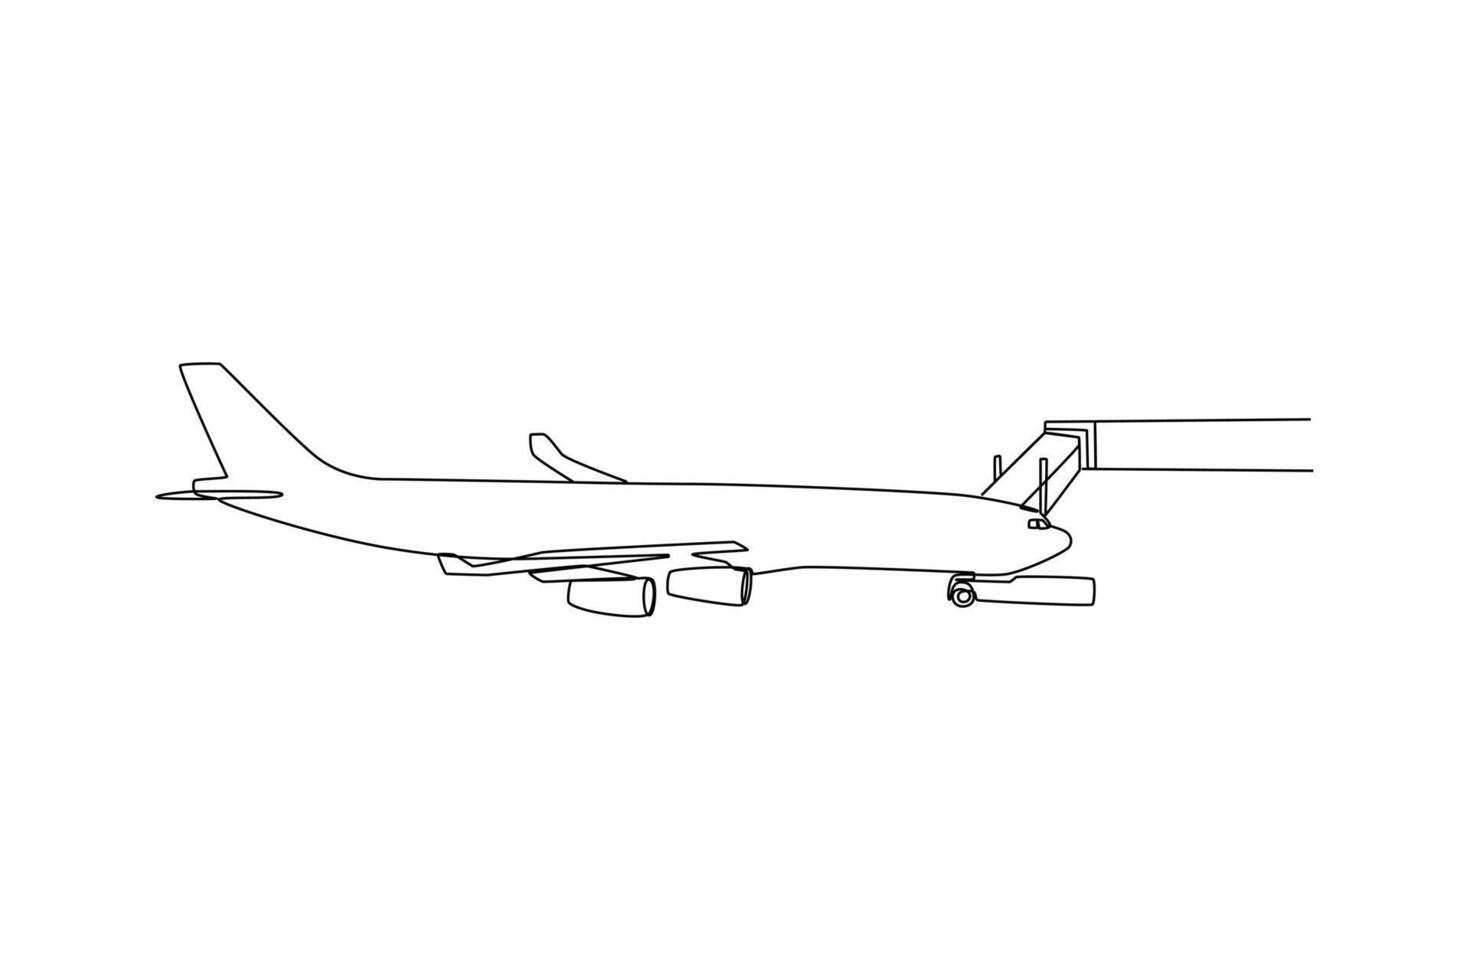 einer kontinuierlich Linie Zeichnung von Passagier Aktivitäten Konzept. Gekritzel Vektor Illustration im einfach linear Stil.